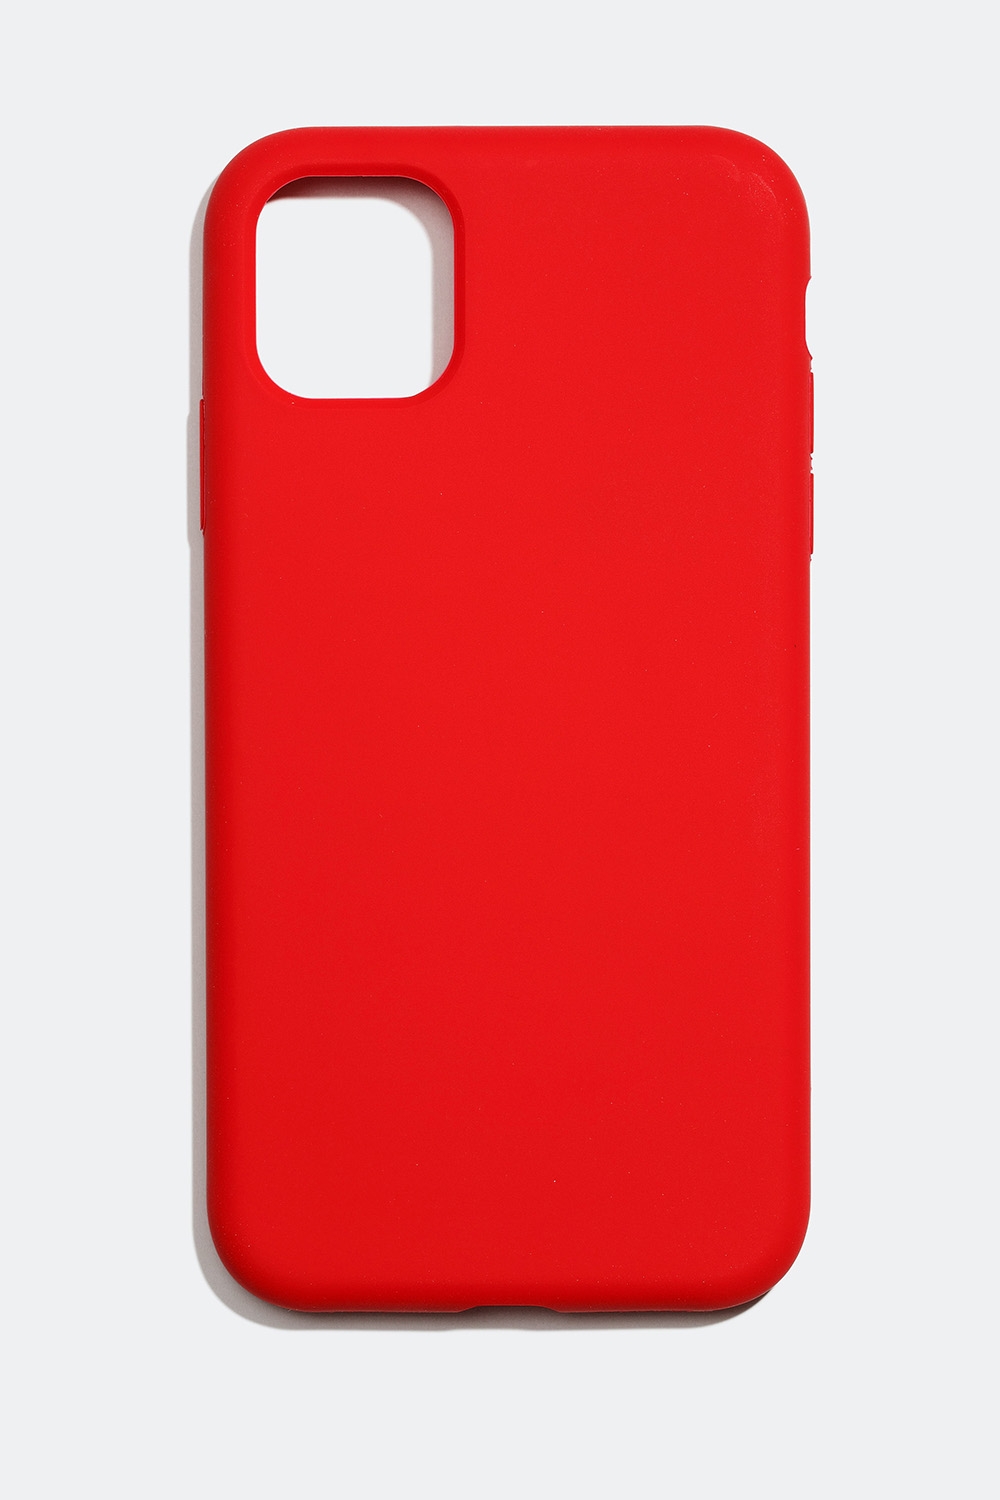 Matt mobildeksel i rødt, iPhone 11/XR i gruppen Tilbehør / Mobiltilbehør / Mobildeksel / iPhone 11 / XR hos Glitter (174000356211)